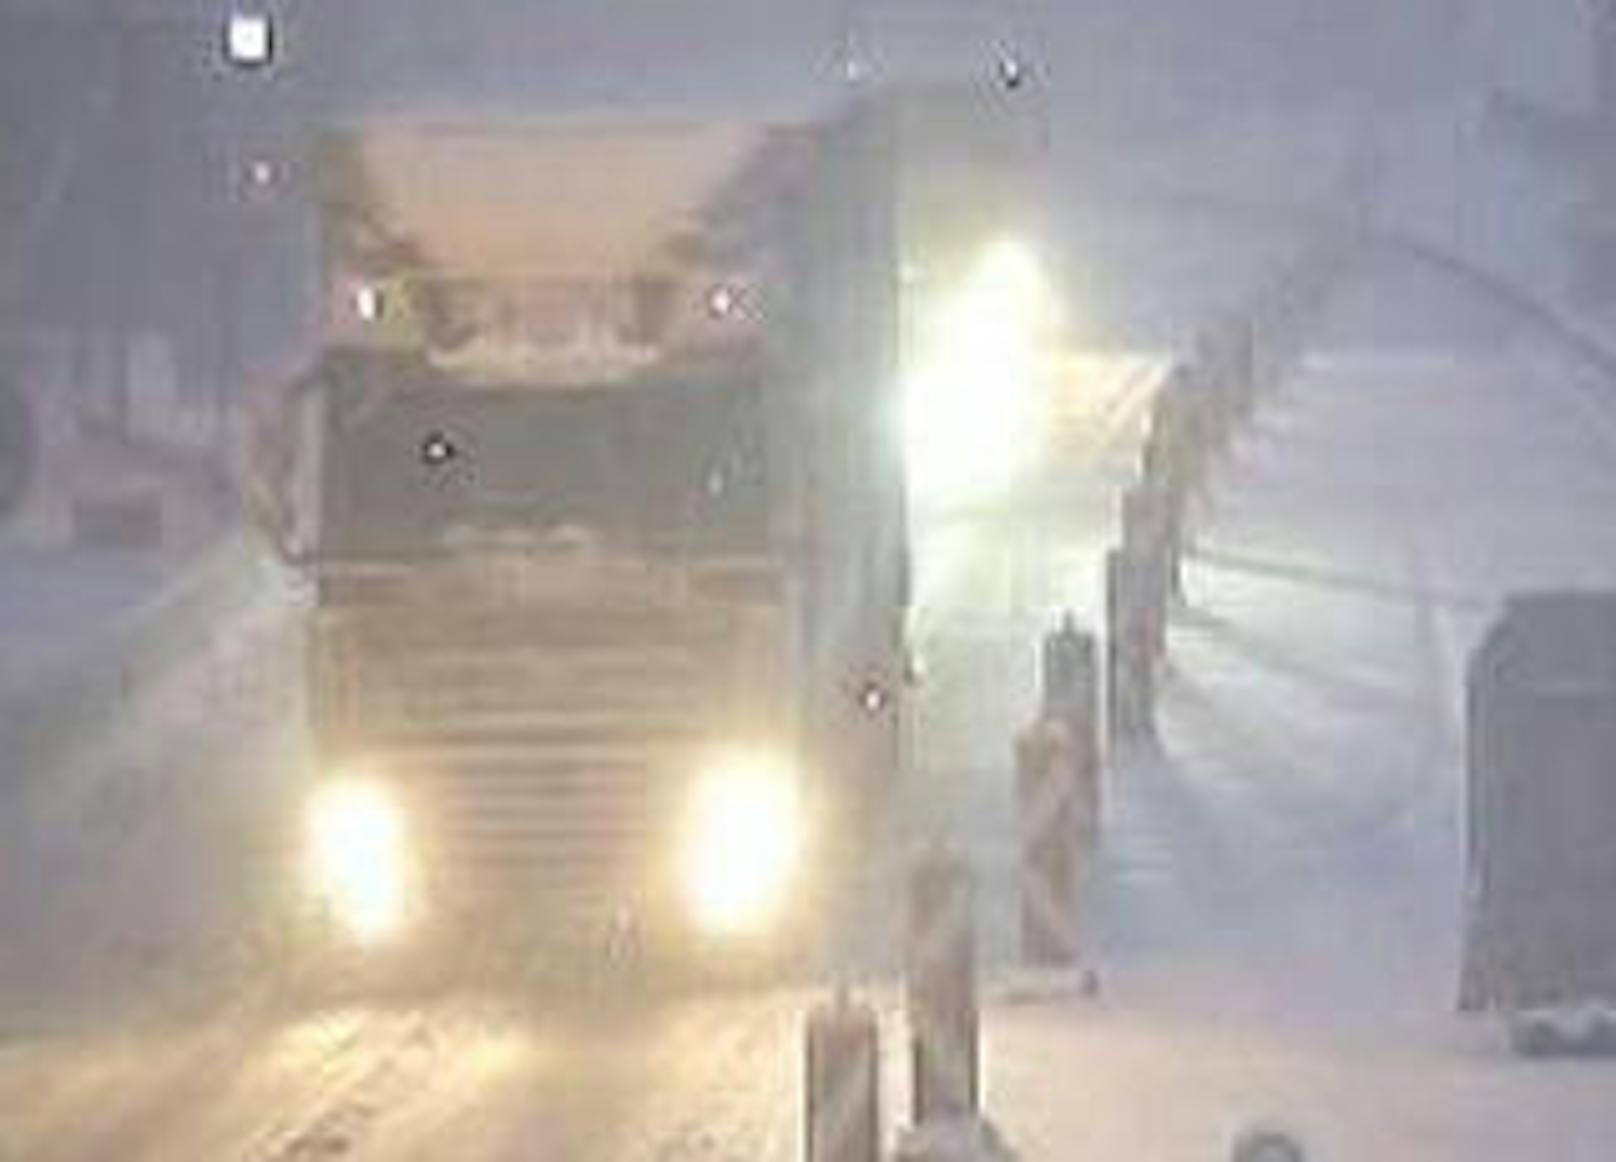 Schnee auf der A2 bei Klagenfurt, es passierten bereits mehrere Unfälle. <b>Weitere Bilder zur aktuellen Schneesituation auf Österreichs Autobahnen finden Sie in dieser Diashow.</b>